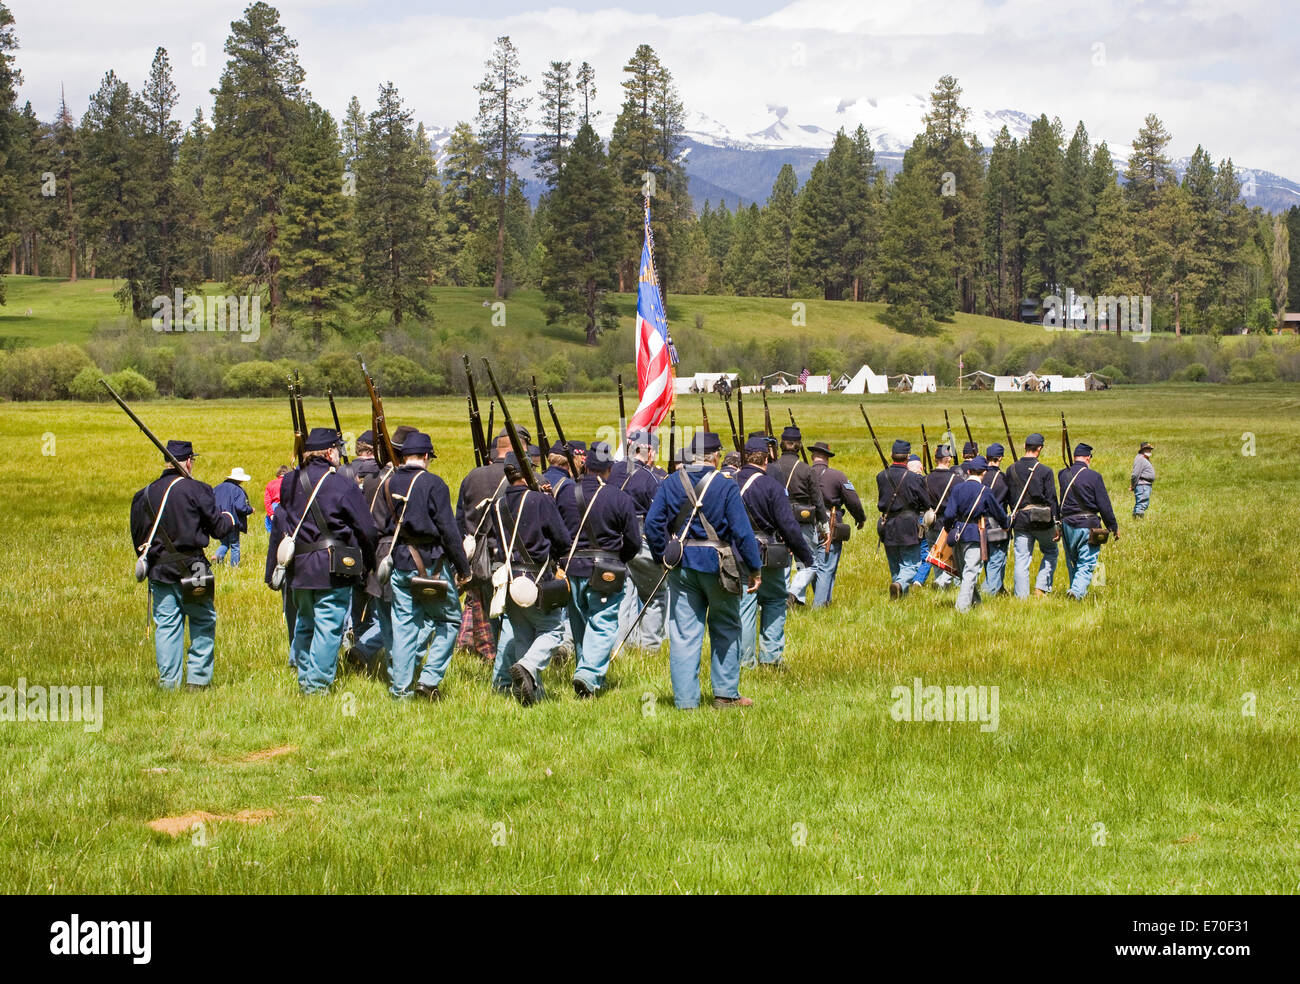 Une reconstitution de la guerre civile entre le nord et le sud de soldats détenus dans la région de la rivière de l'Metolius des Cascades de centre de l'Oregon. Banque D'Images